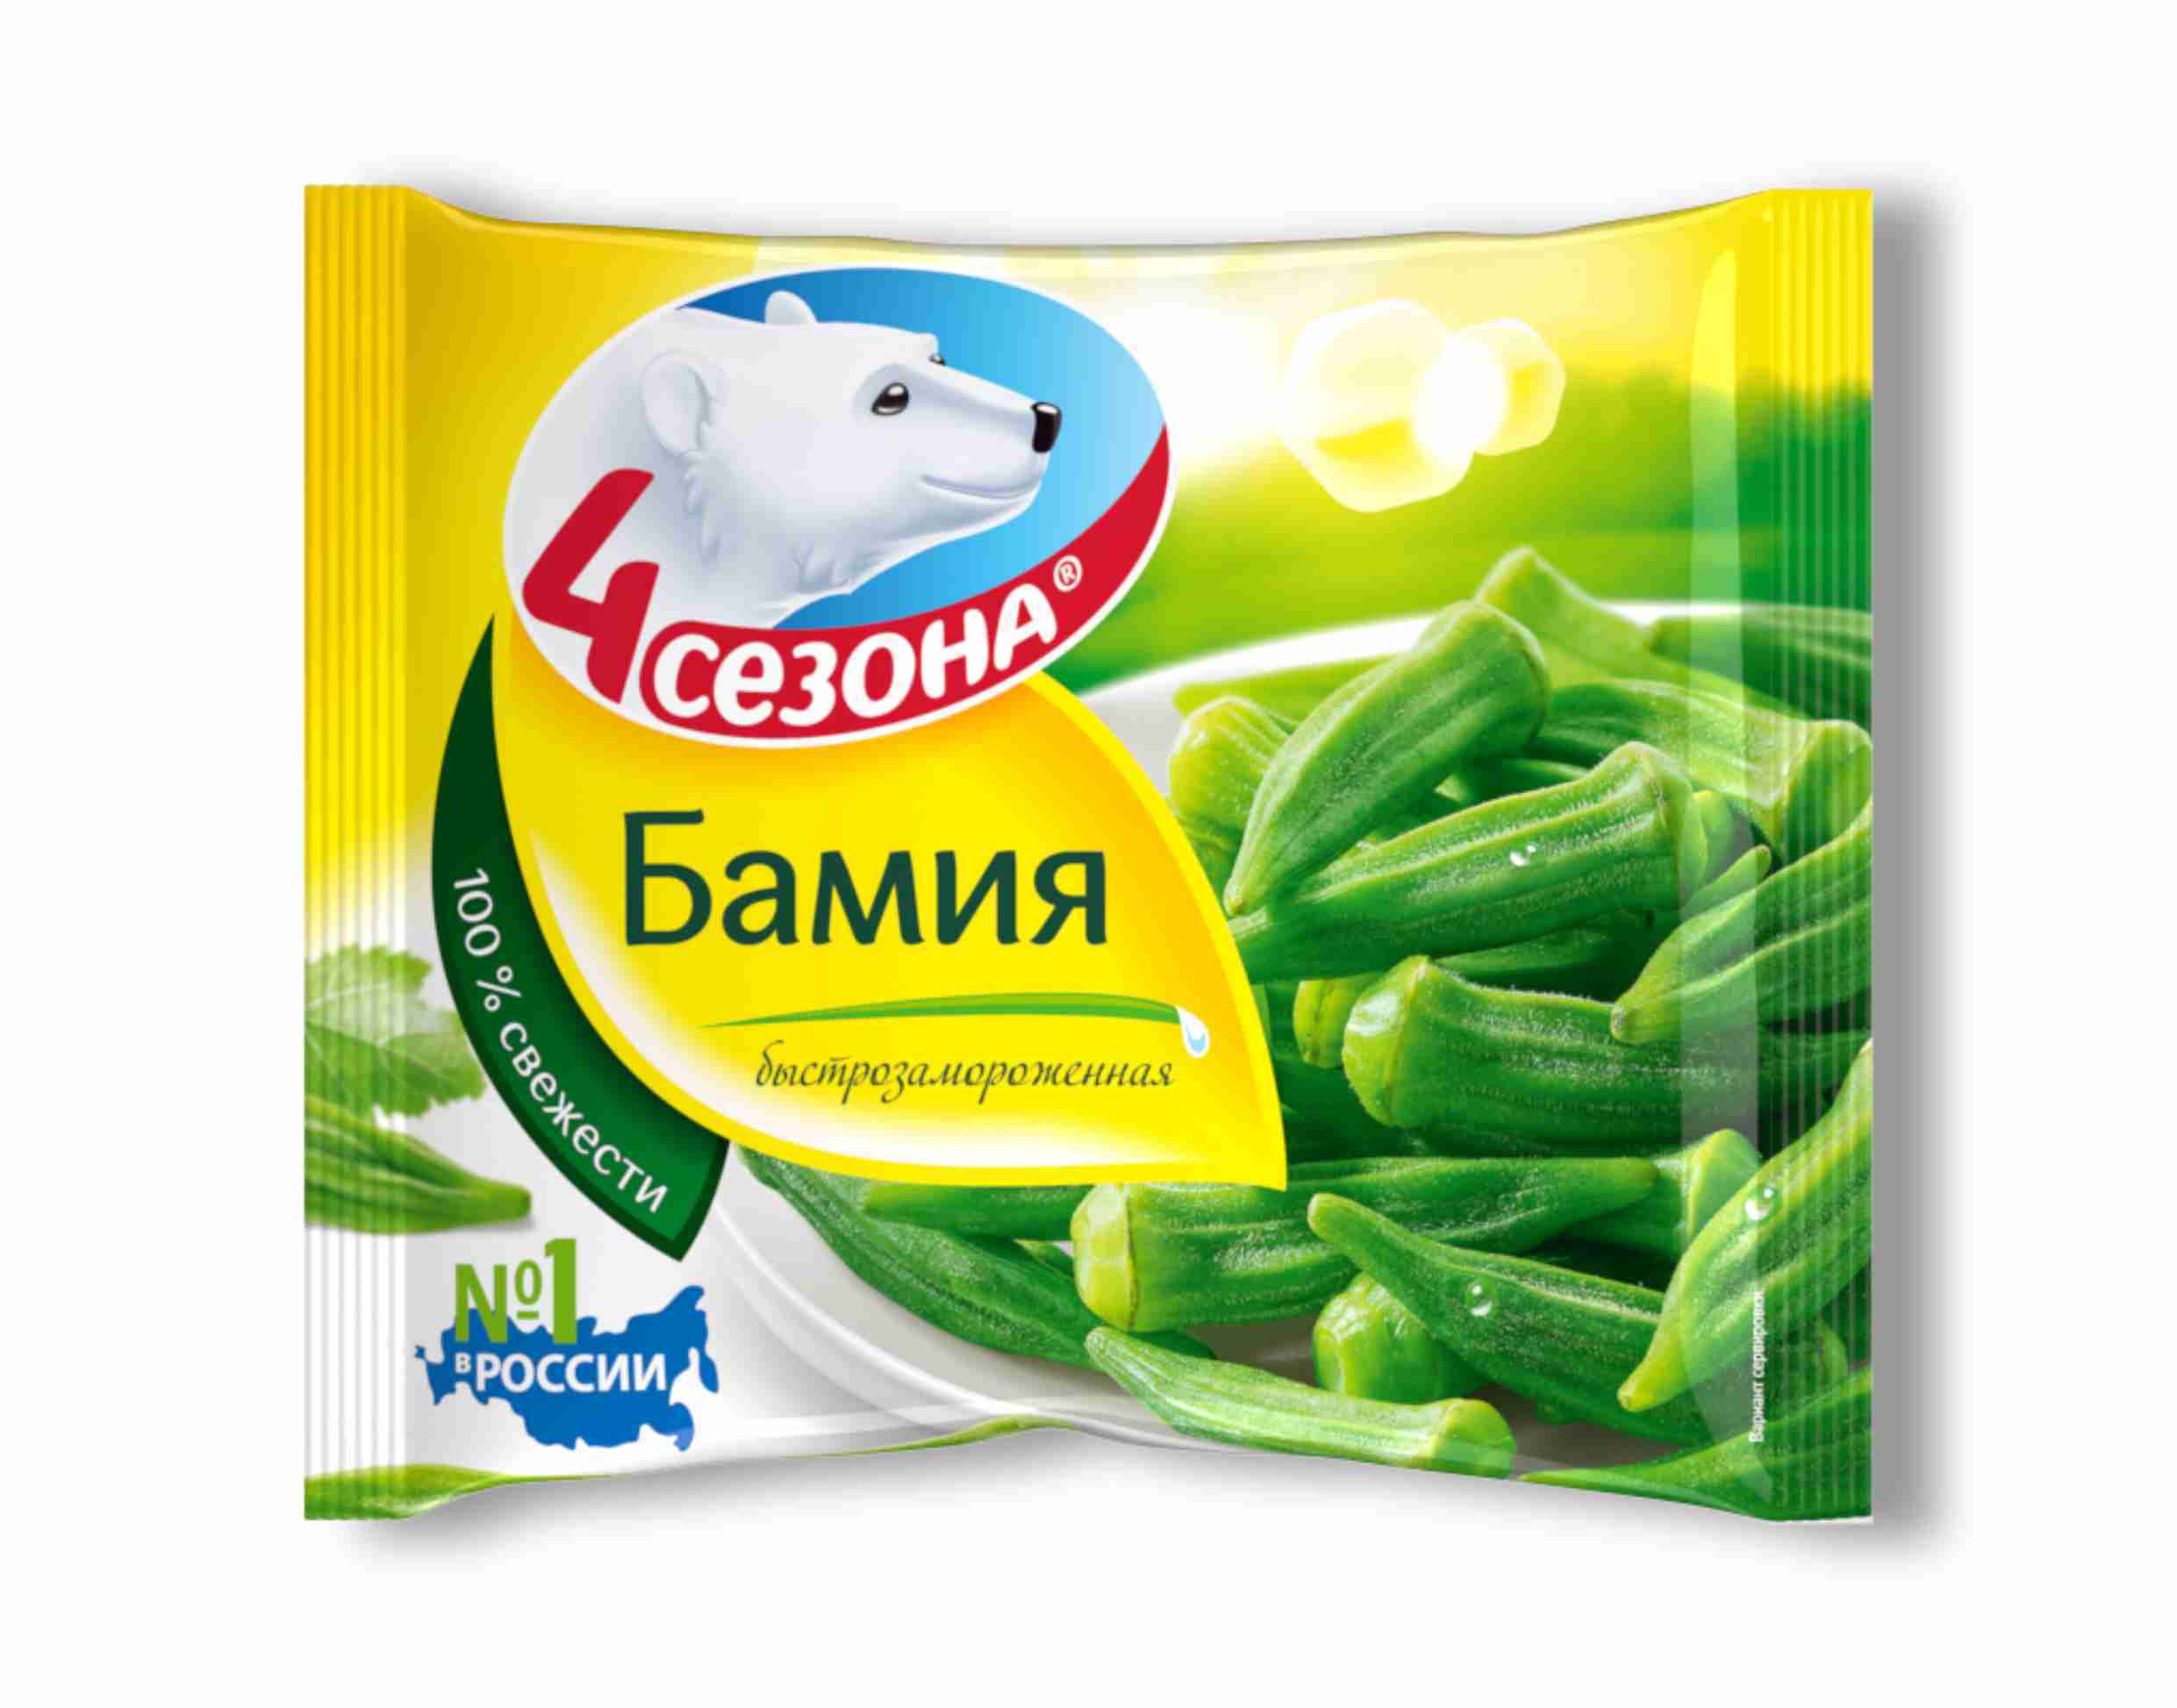 Морож. овощи Бамия  4 Сезона  400г упак - интернет-магазин Близнецы